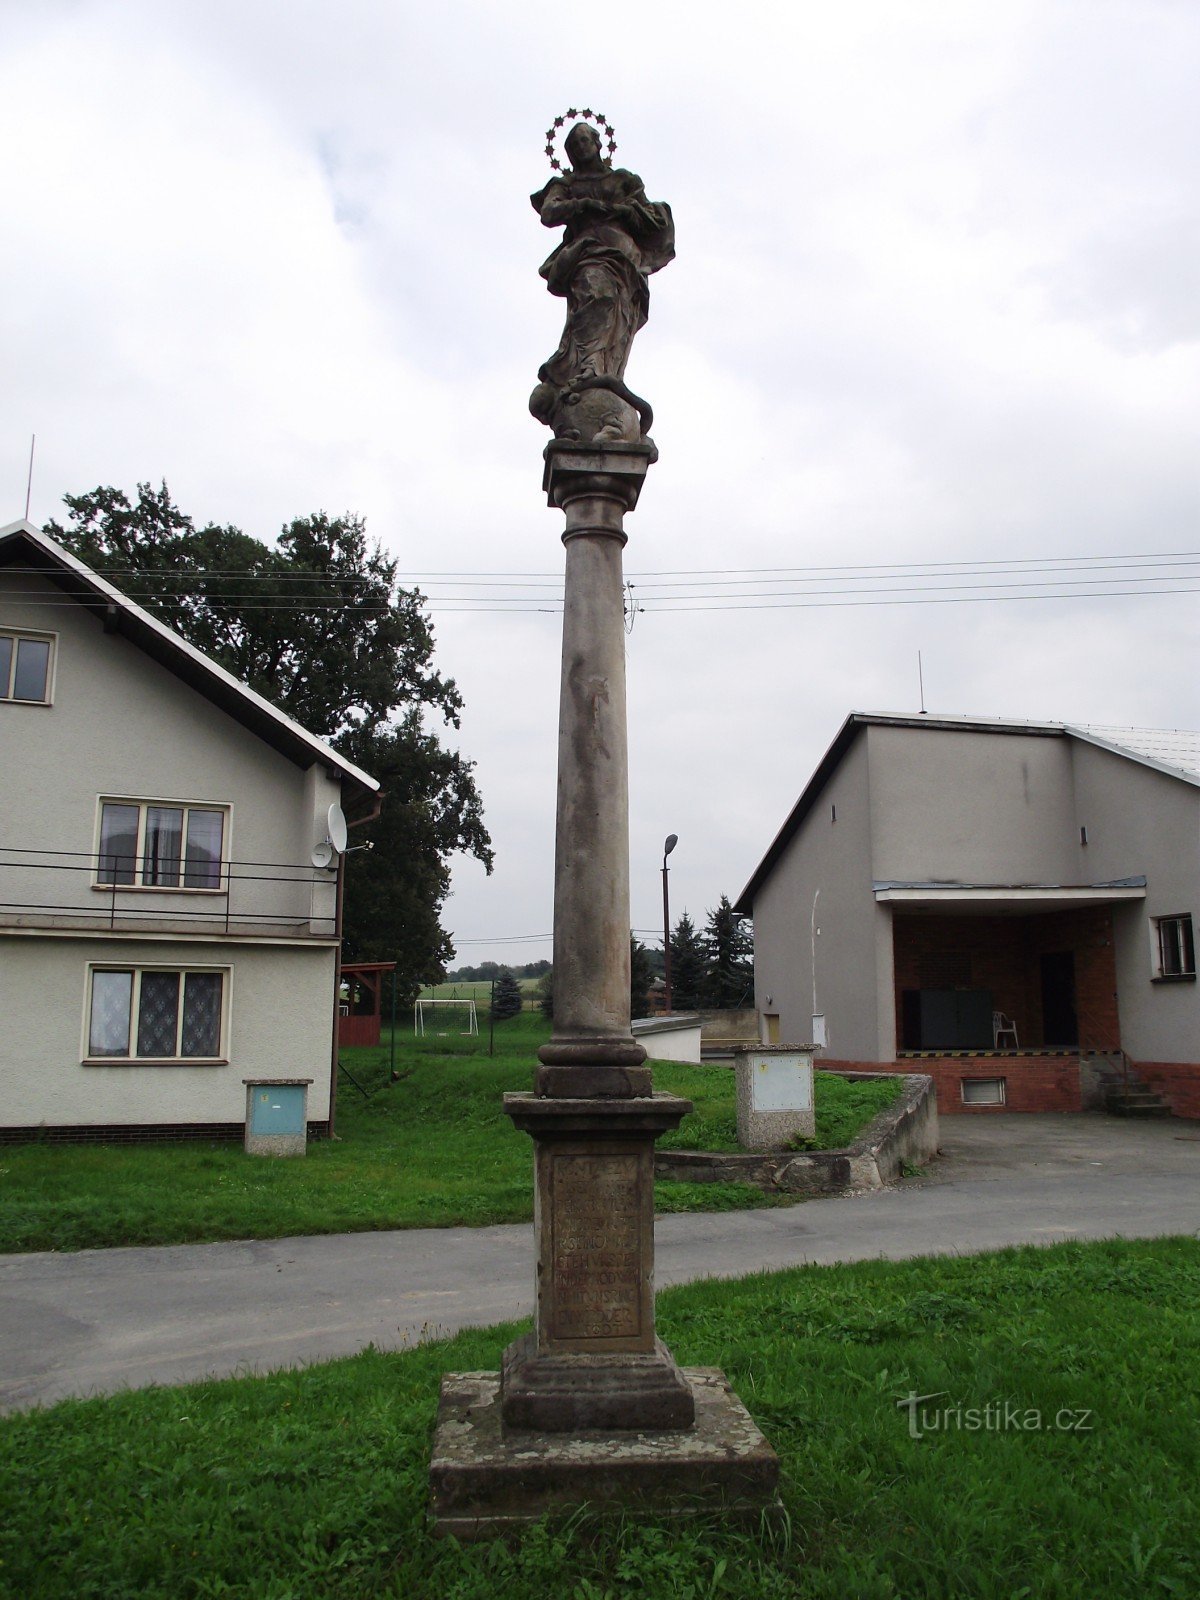 Marijanski steber